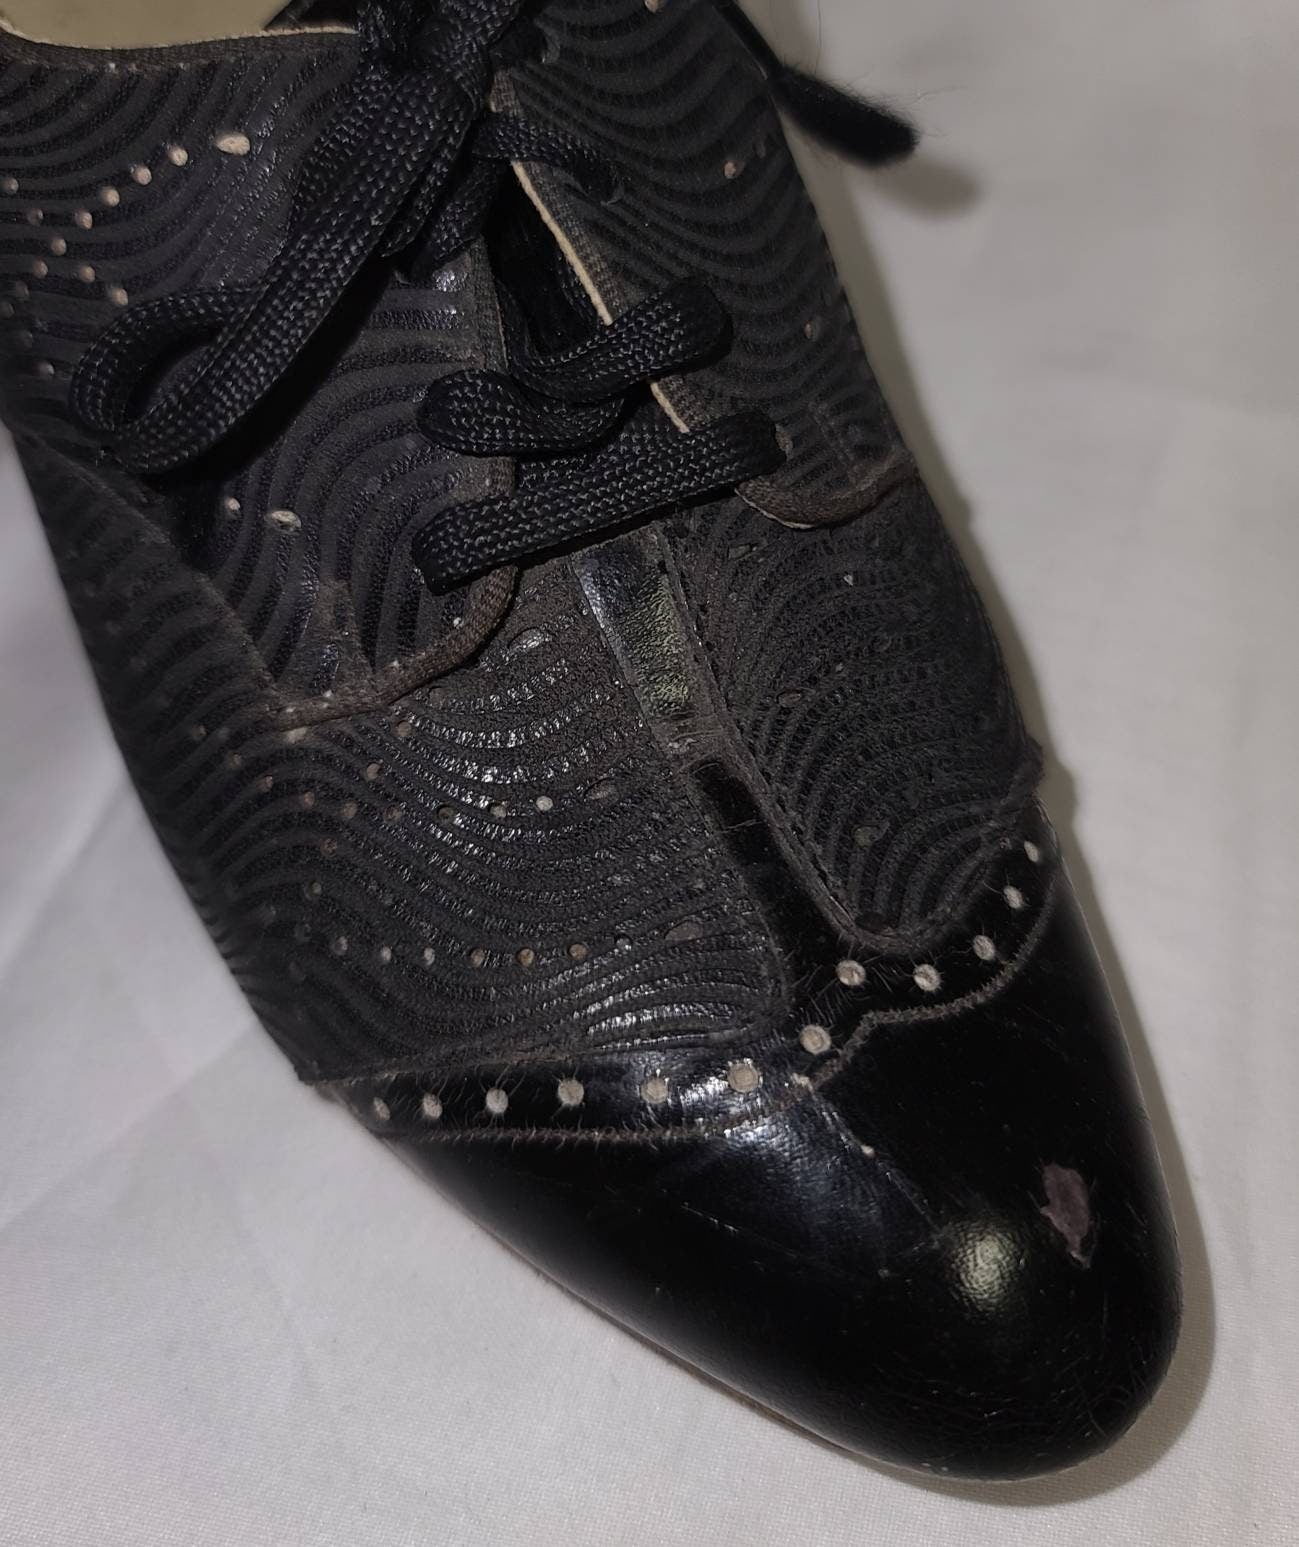 SALE Vintage 1930s Shoes Black Leather Oxford Pumps Heels Spectator Style Unique Details Art Deco Flapper US 4 1/2 very small